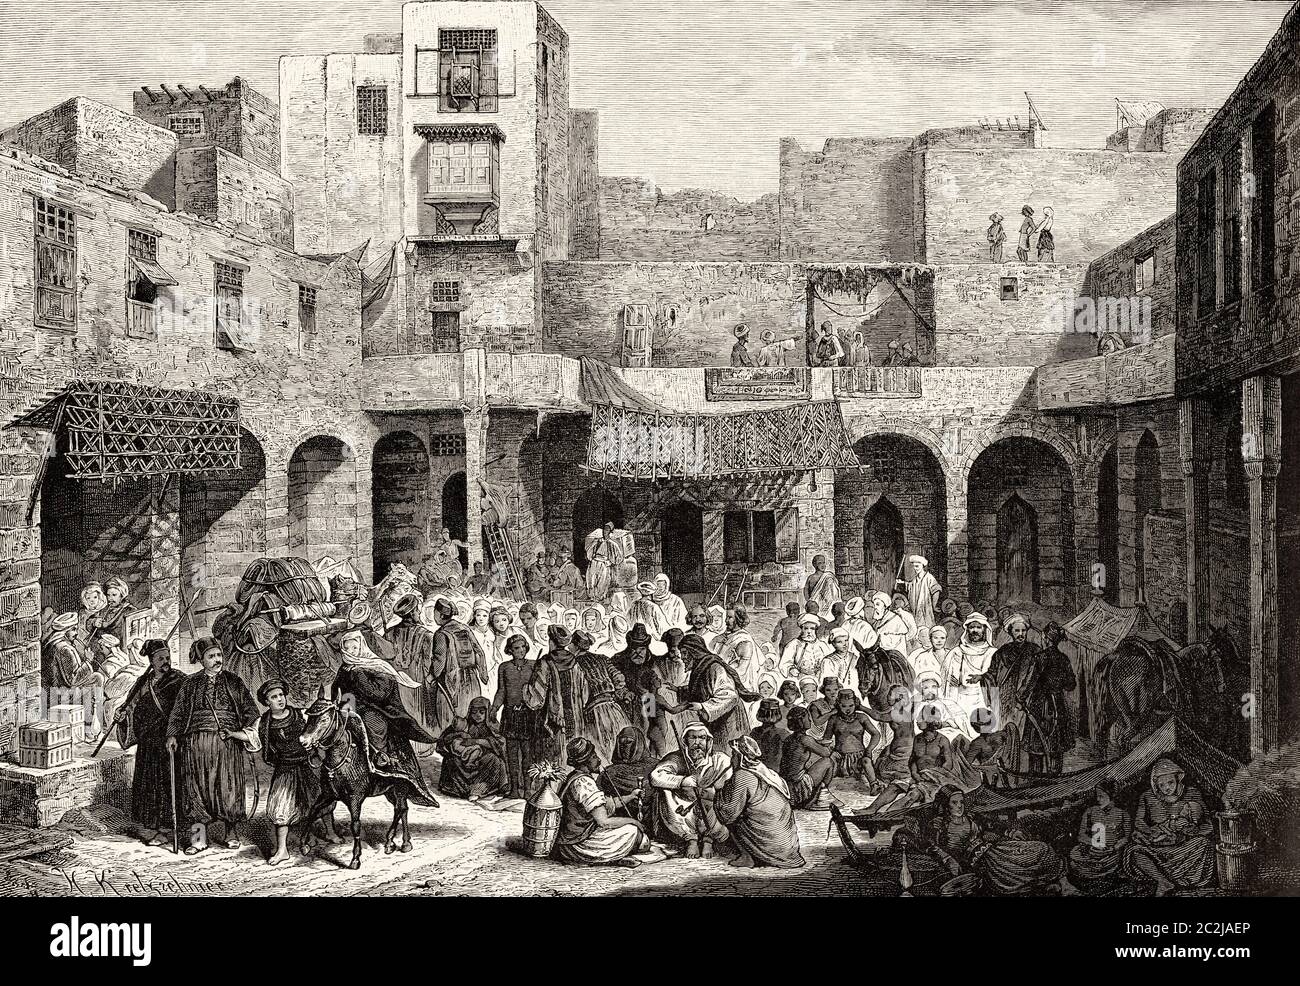 Il mercato degli schiavi, il Cairo. Egitto. Illustrazione incisa del 19 ° secolo, El Mundo Ilustrado 1880 Foto Stock